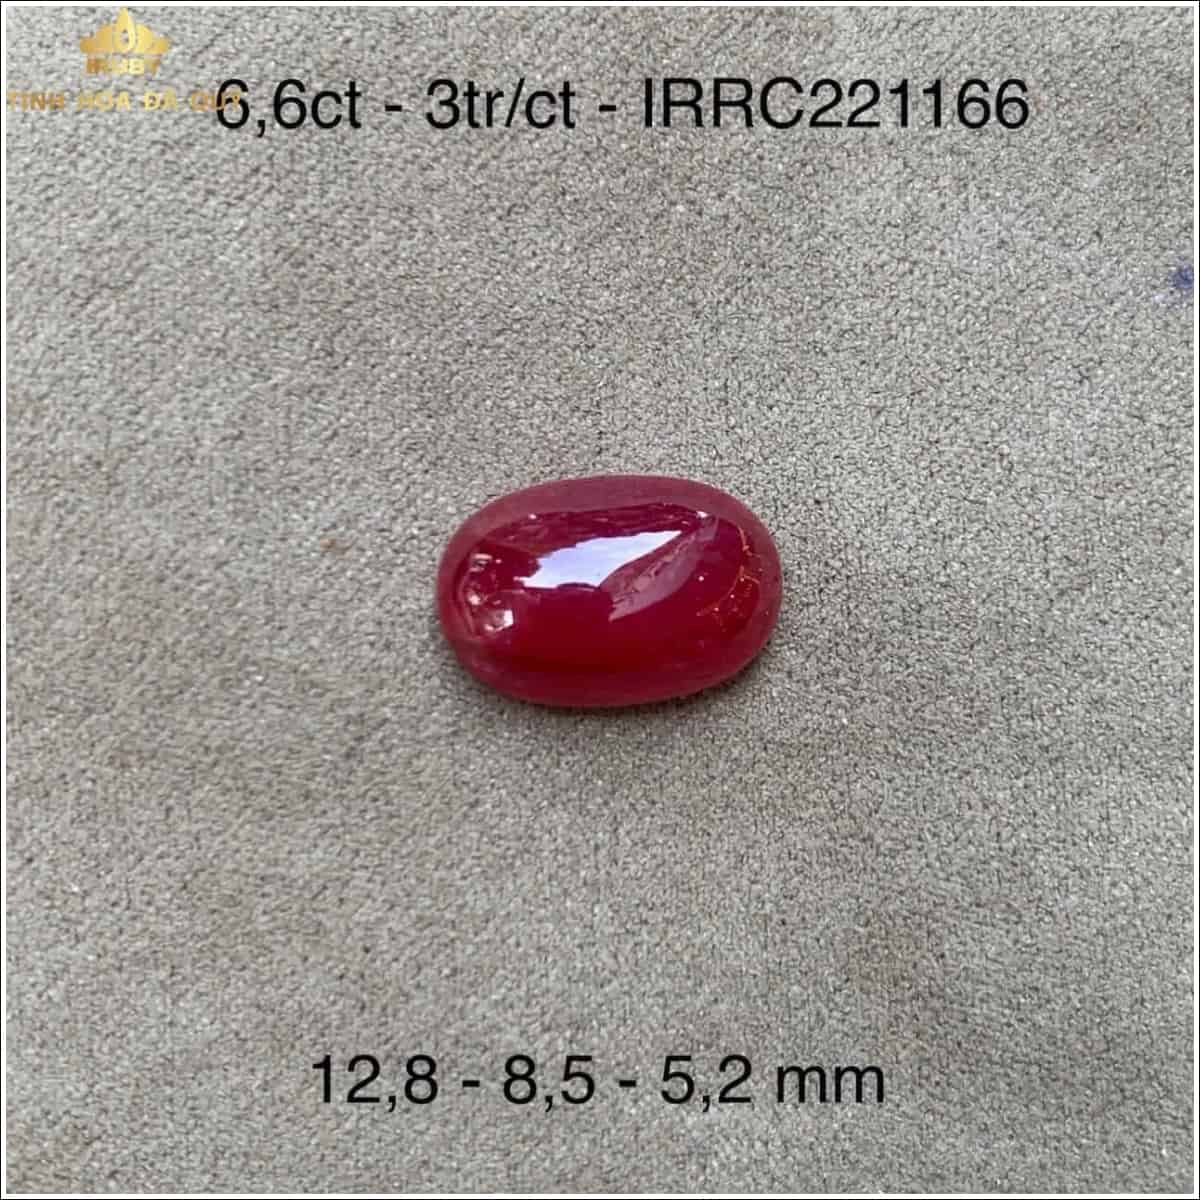 Viên Ruby tự nhiên màu đỏ đẹp 6,6ct - IRRC 221166 hình ảnh 